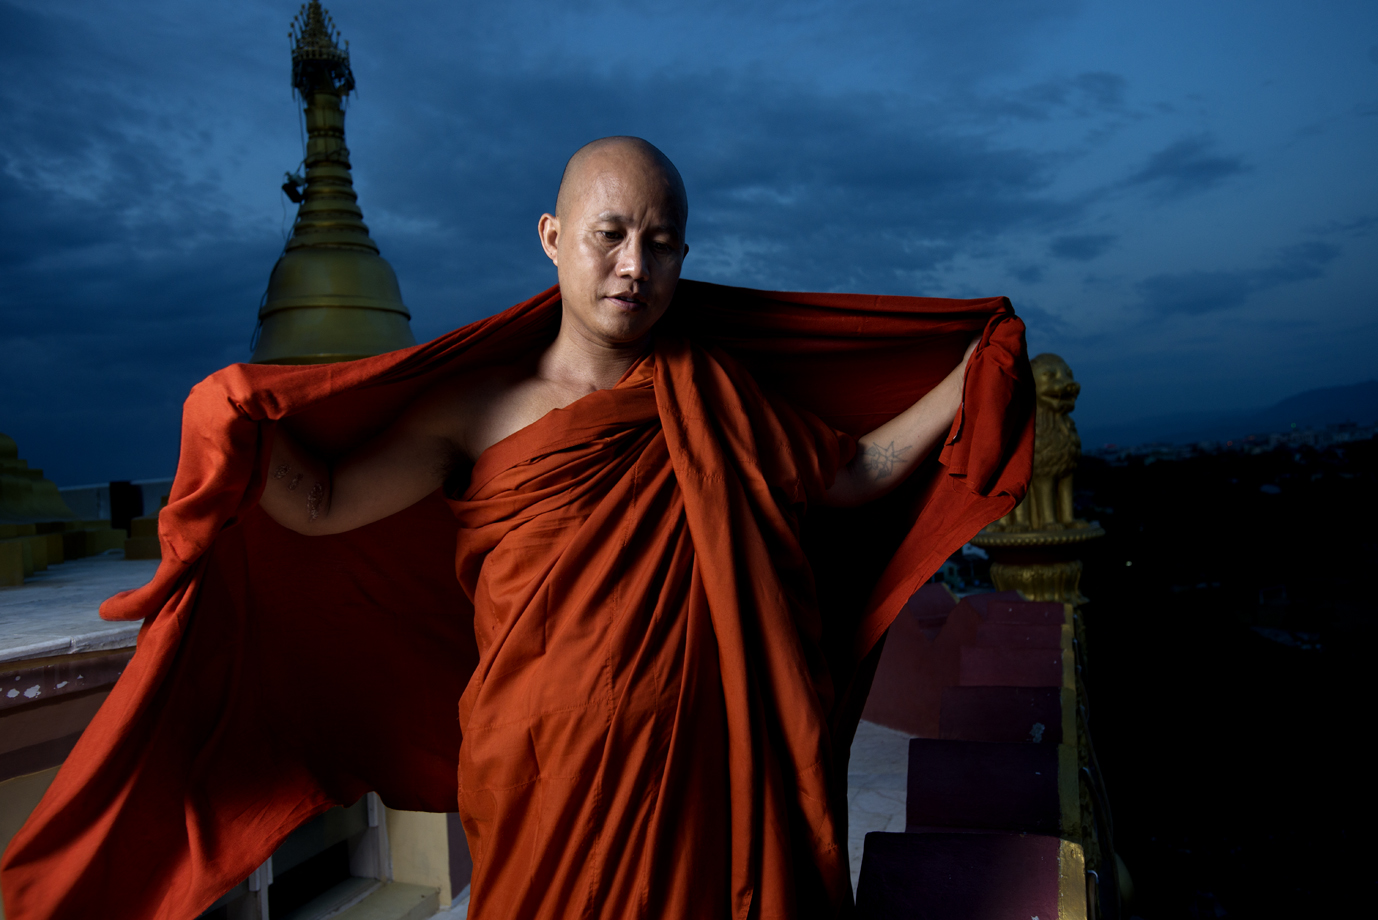  Extremist Buddhist monk, Ashin Wirathu, Mandalay / Burma 